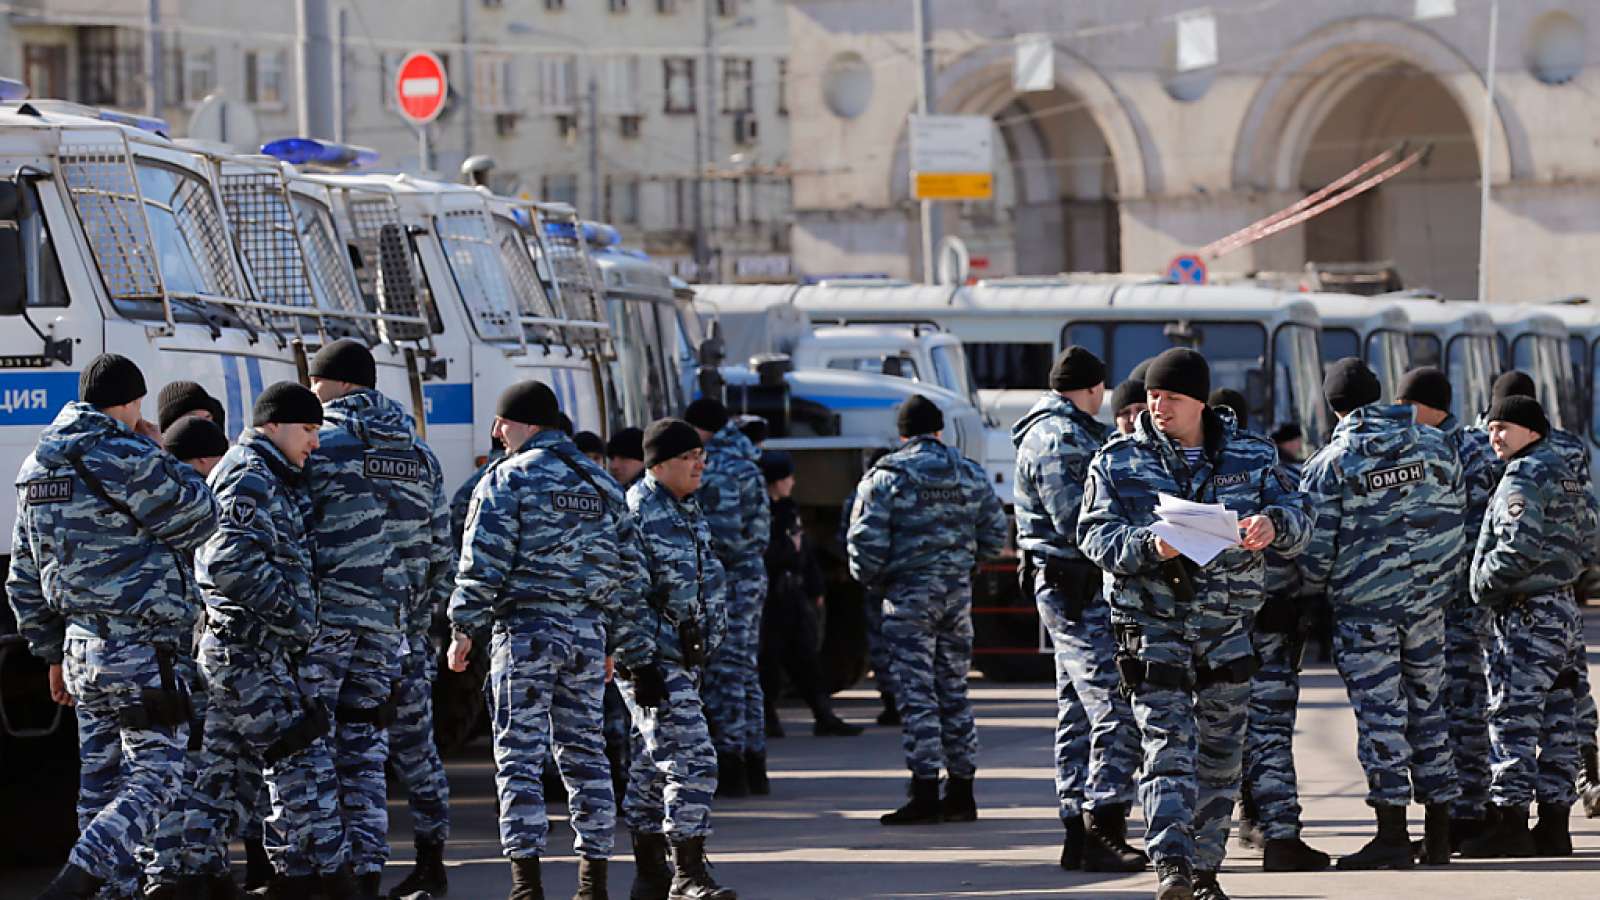 In der russischen Grossstadt Chabarowsk hat es einen Anschlag gegeben, bei dem zwei Sicherheitskräfte getötet wurden. (Symbolbild)